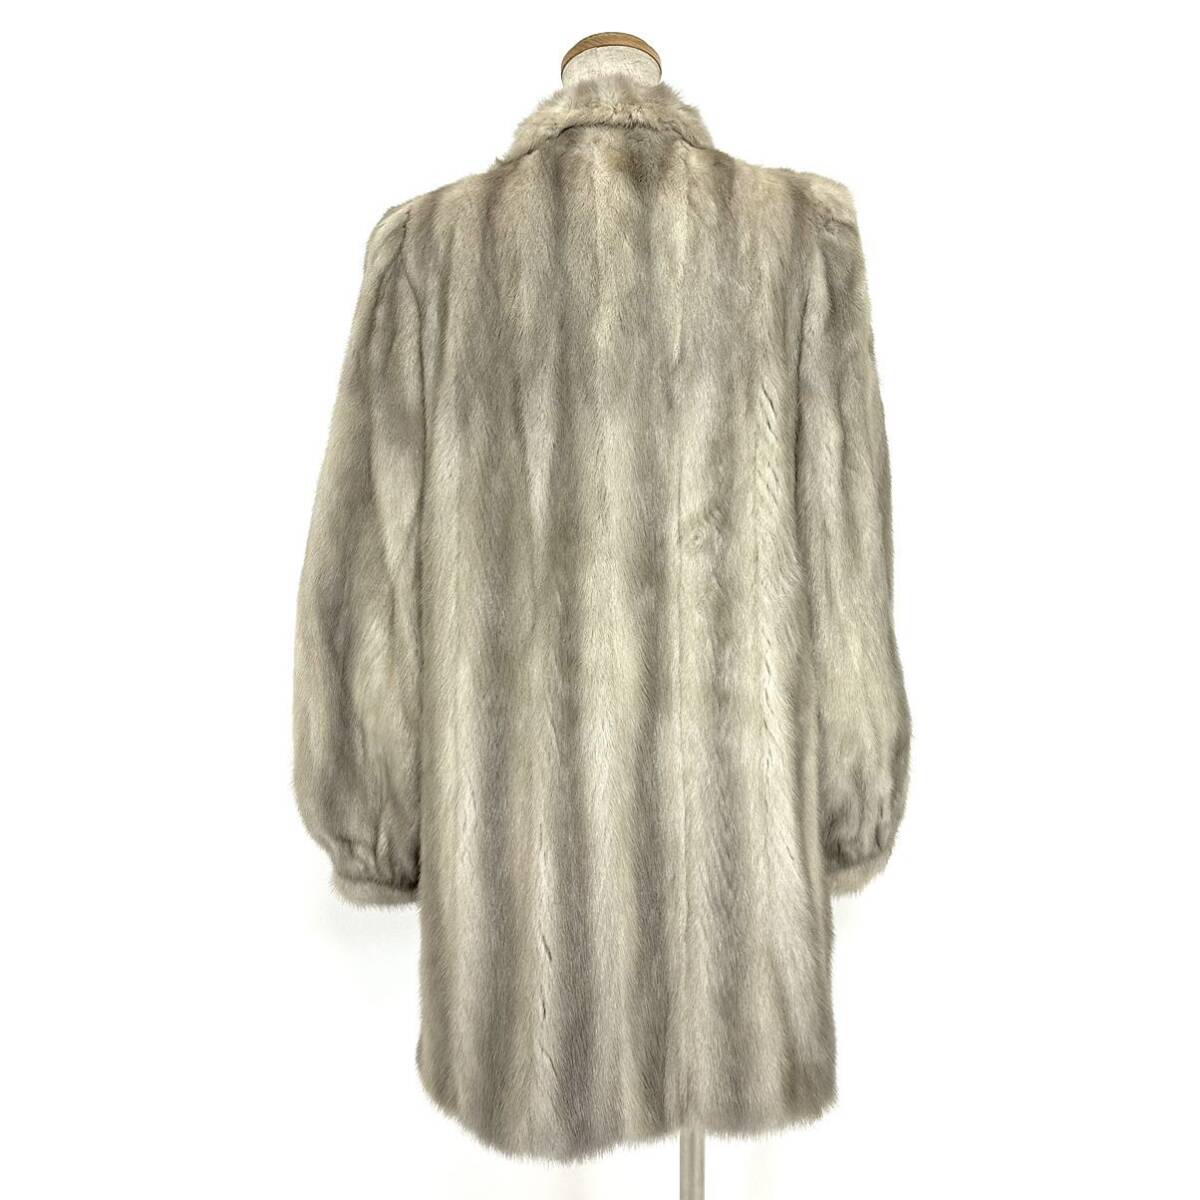 【貂商】h2873 carven furs サファイアミンク ハーフコート デザインコート セミロング ミンクコート 貂皮 mink身丈 約80cmの画像3